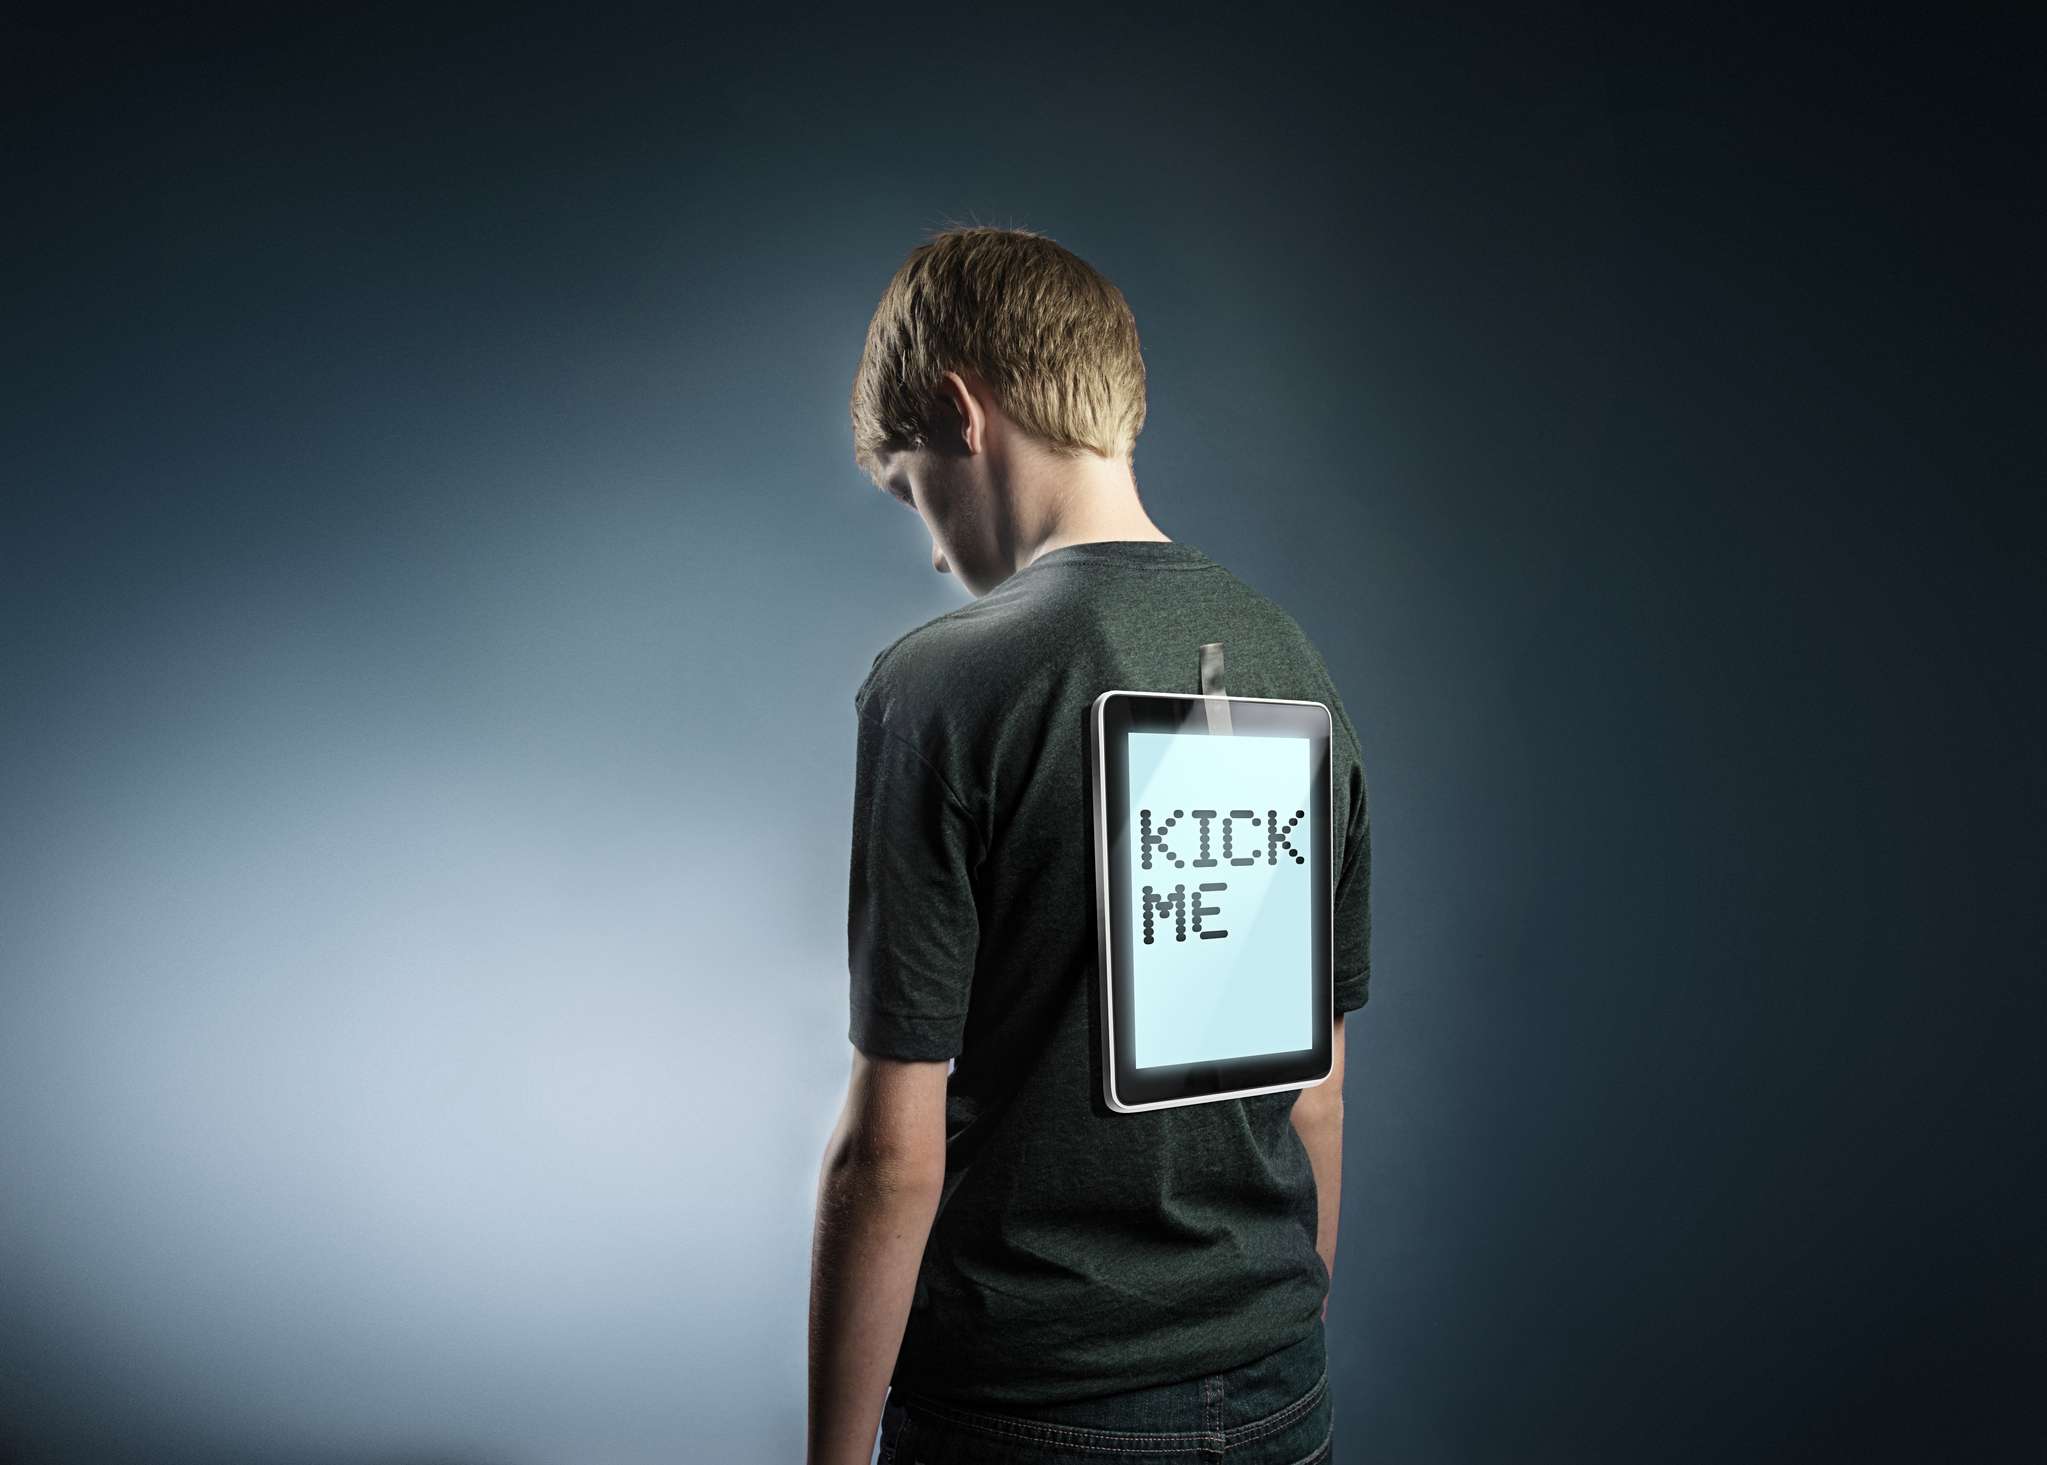 Mladý teenager s tabletem přilepeným k jejich zádům, který říká „Kick me“, představuje kyberšikanu.